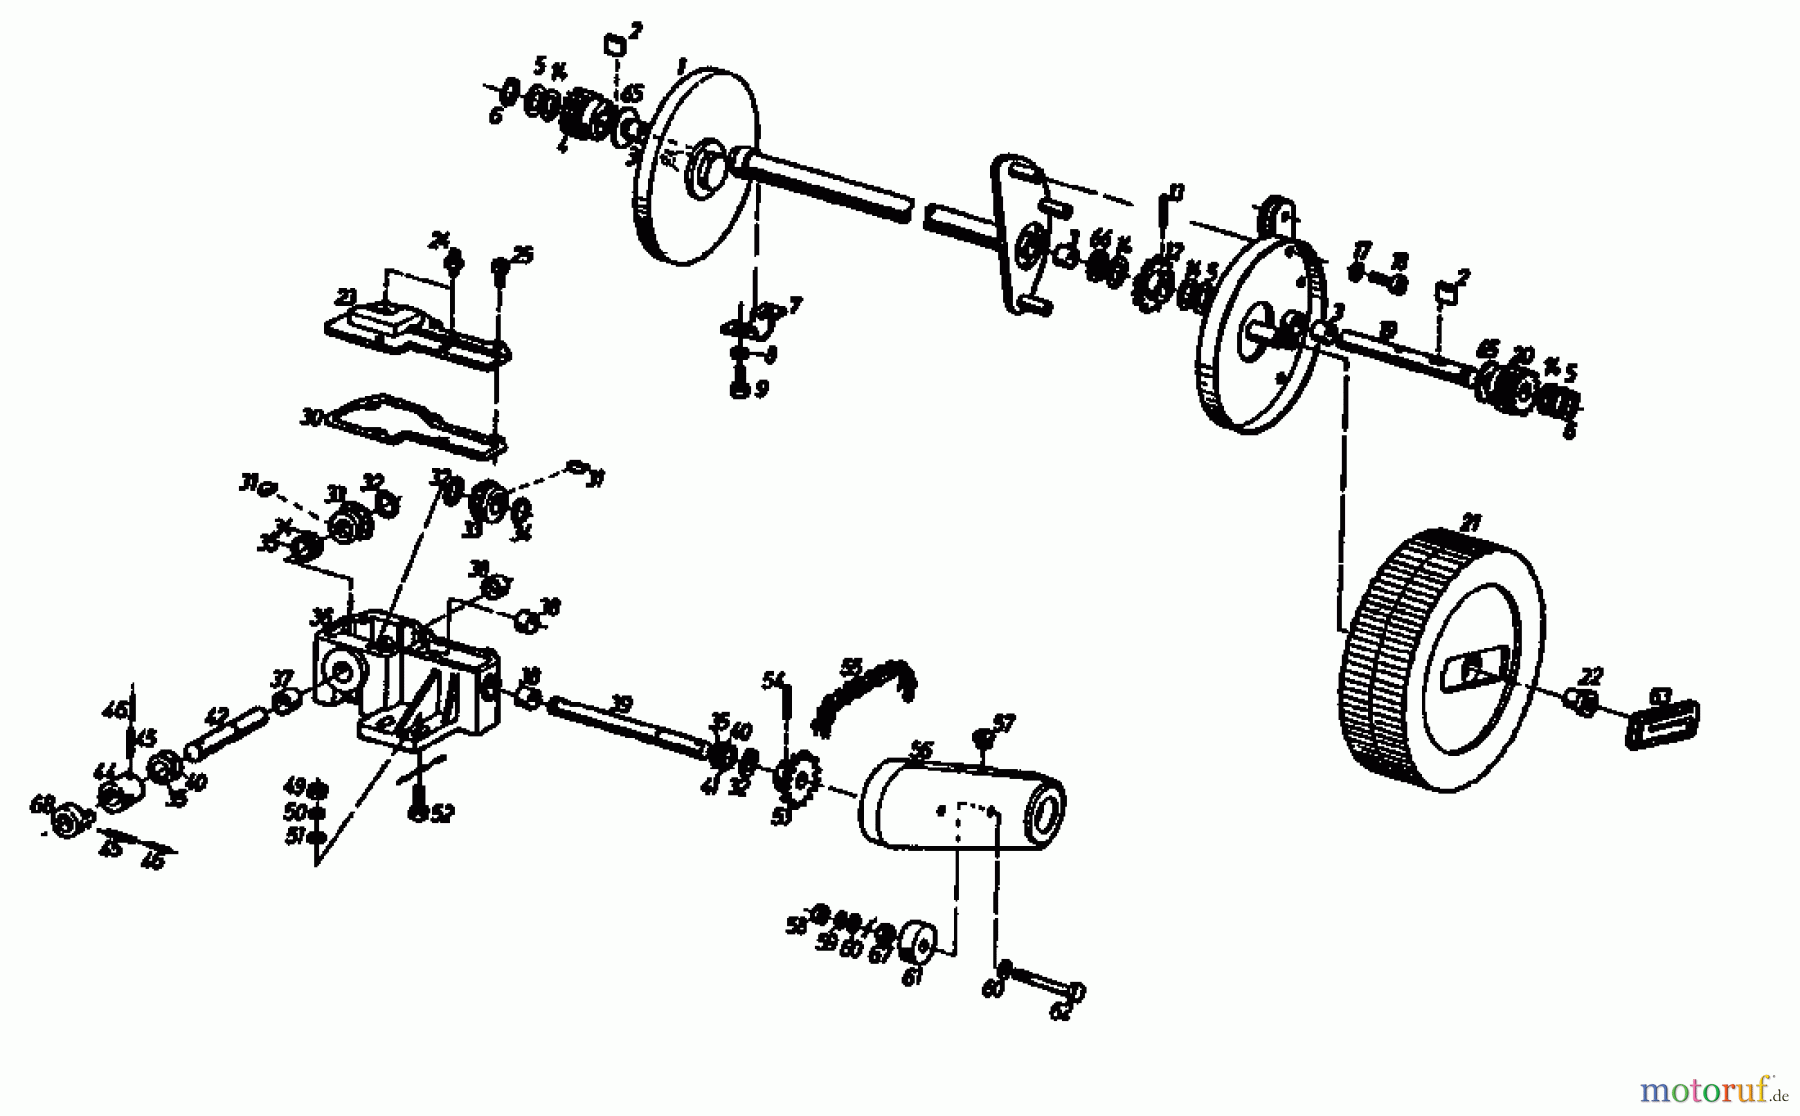  Gutbrod Petrol mower self propelled HB 45 R 02627.03  (1987) Gearbox, Wheels